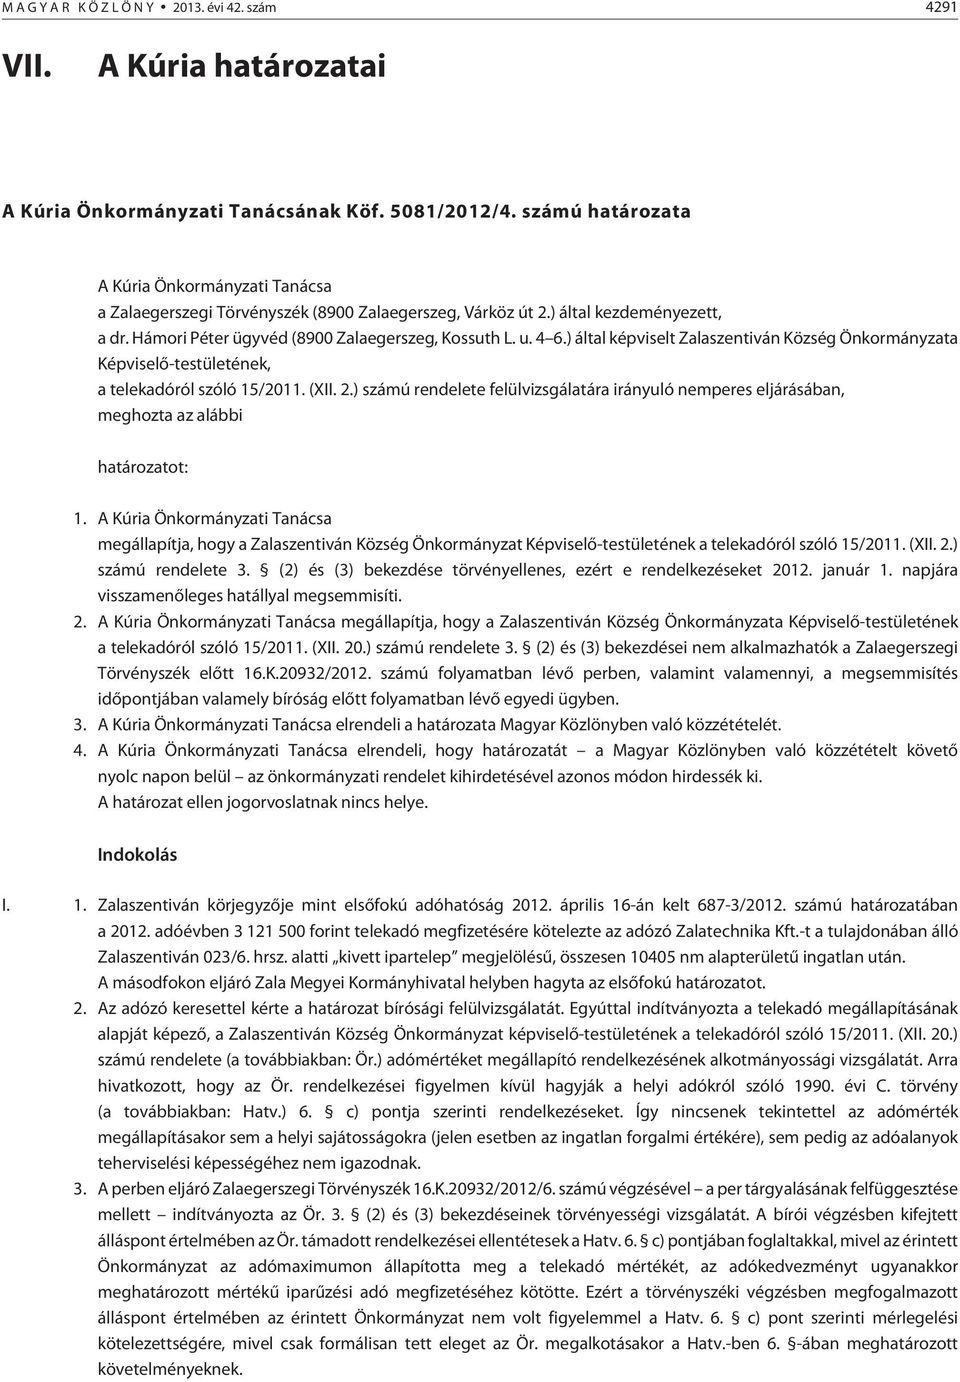 ) által képviselt Zalaszentiván Község Önkormányzata Képviselõ-testületének, a telekadóról szóló 15/2011. (XII. 2.